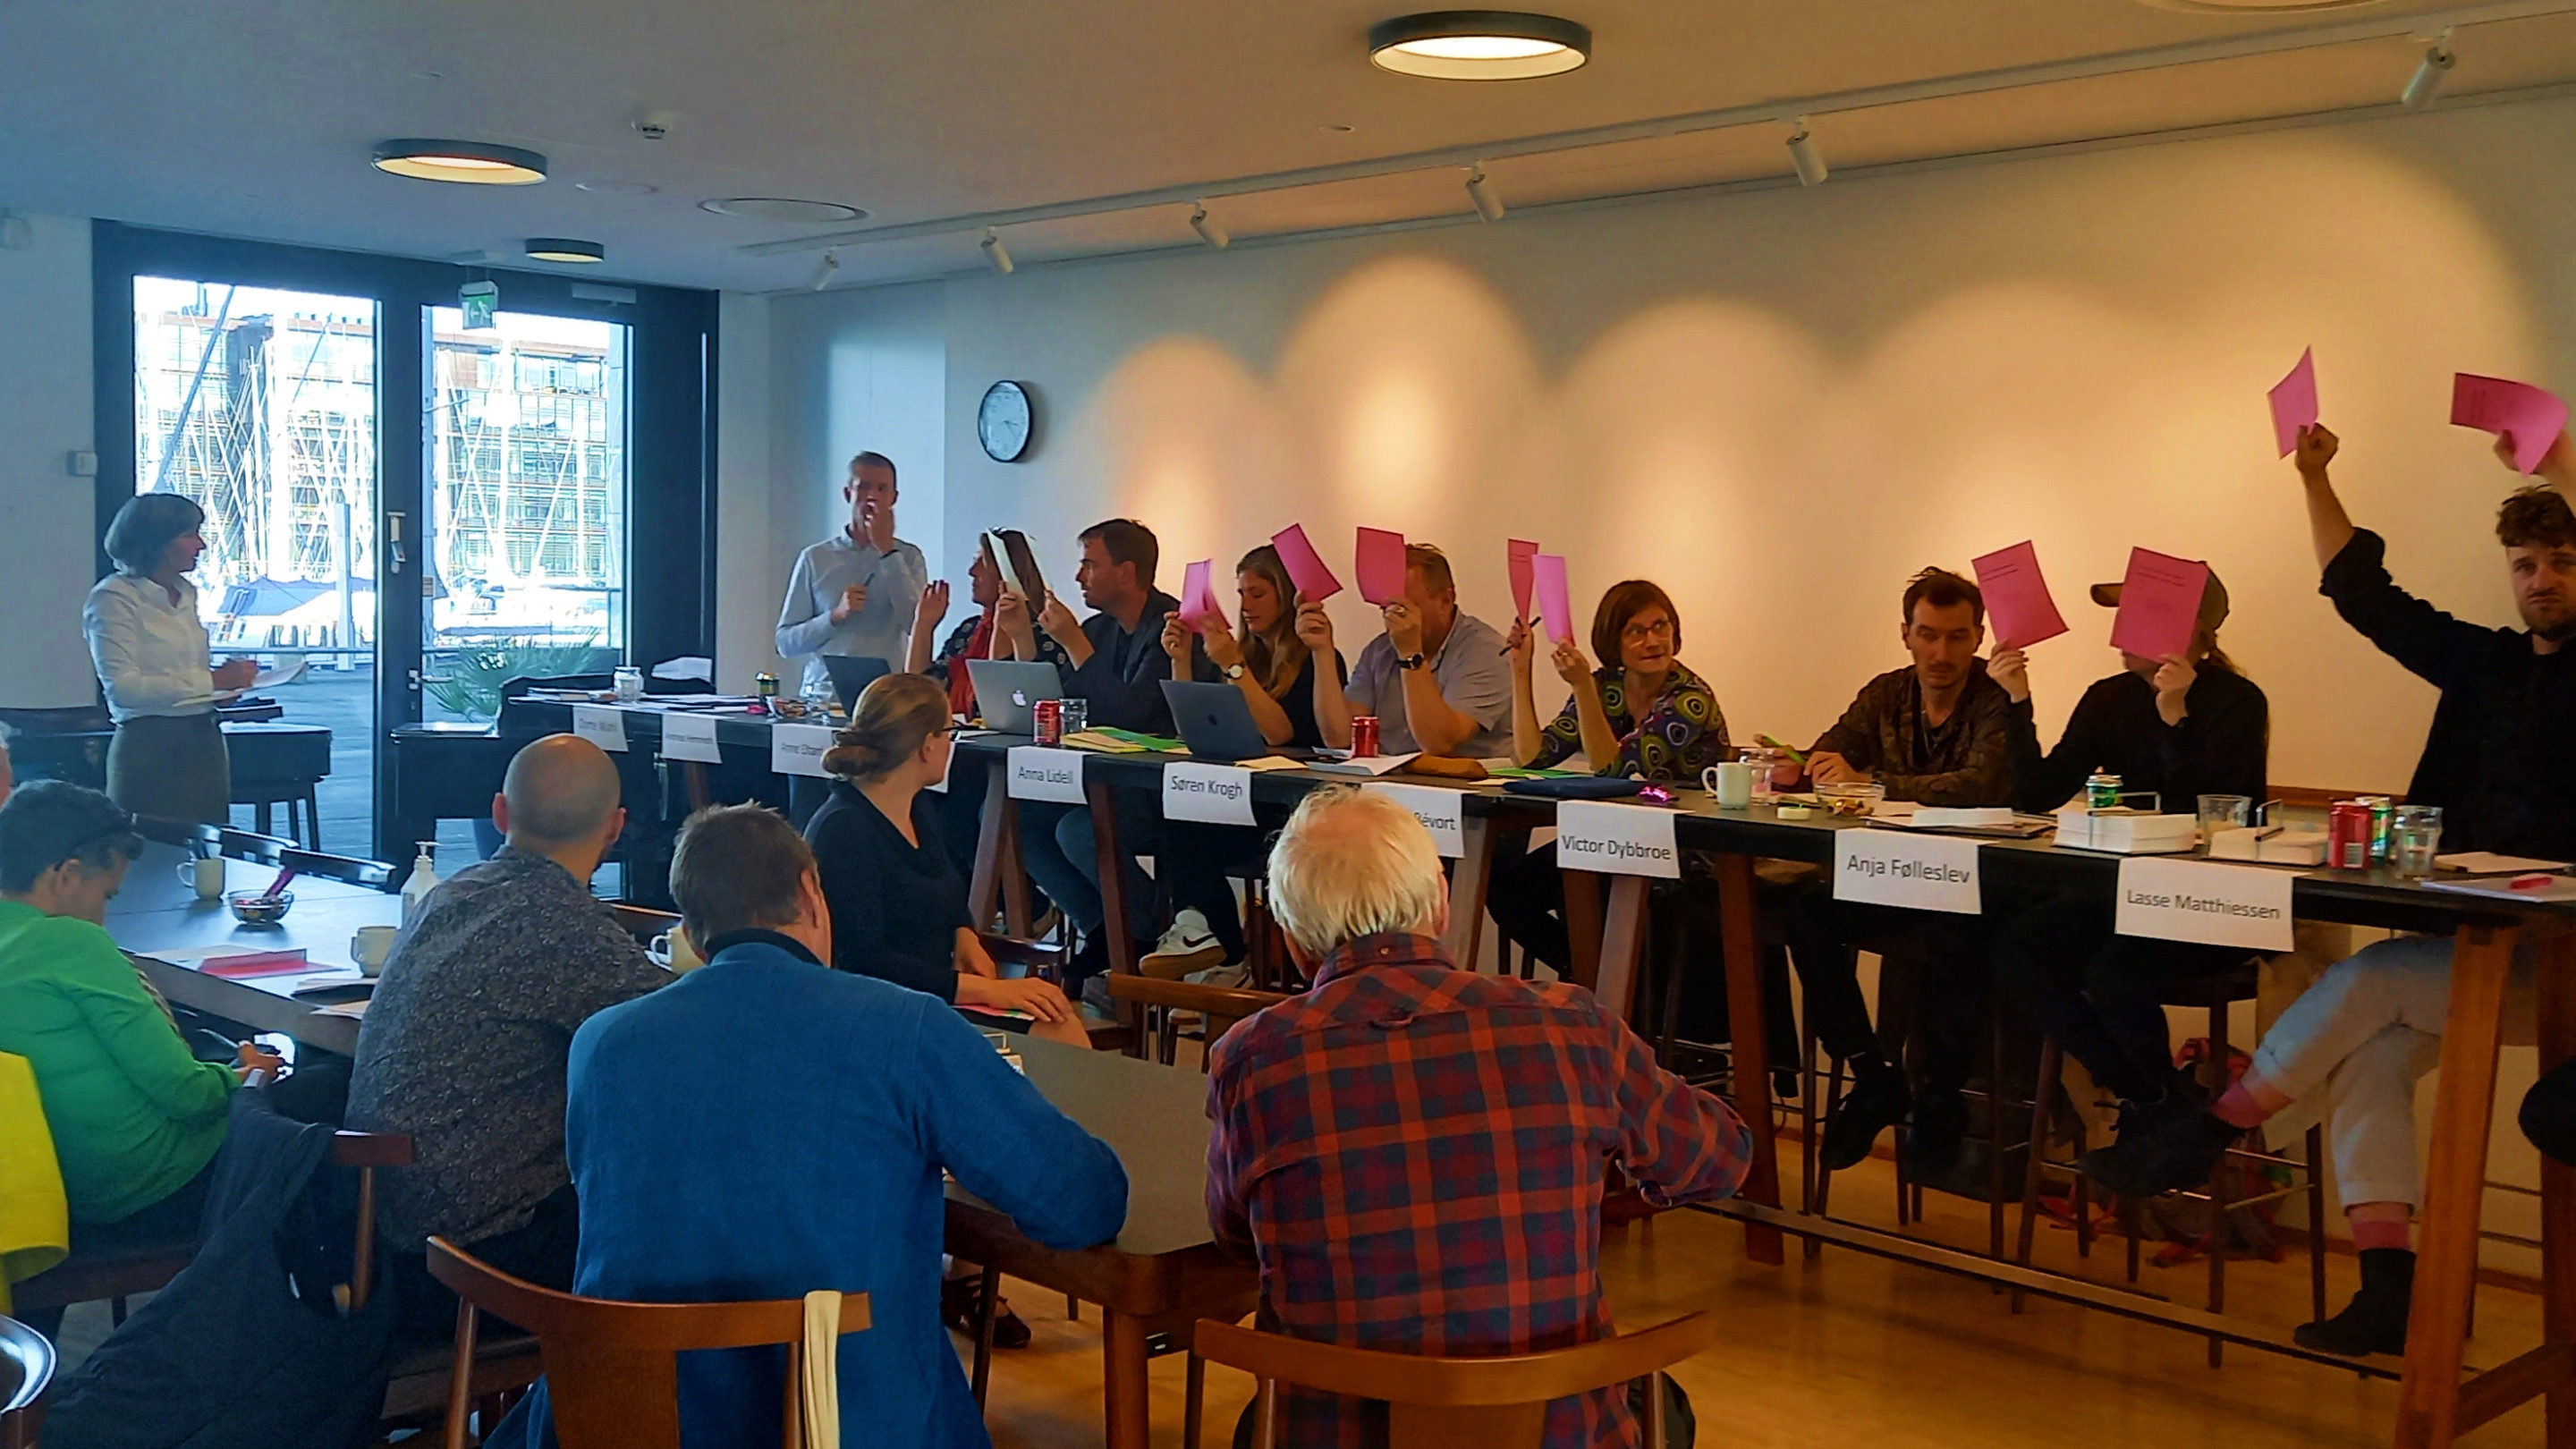 En nyvalgt bestyrelse af folk, der sidder ved et bord og holder lyserødt papir op og viser resultaterne fra generalforsamlingen.